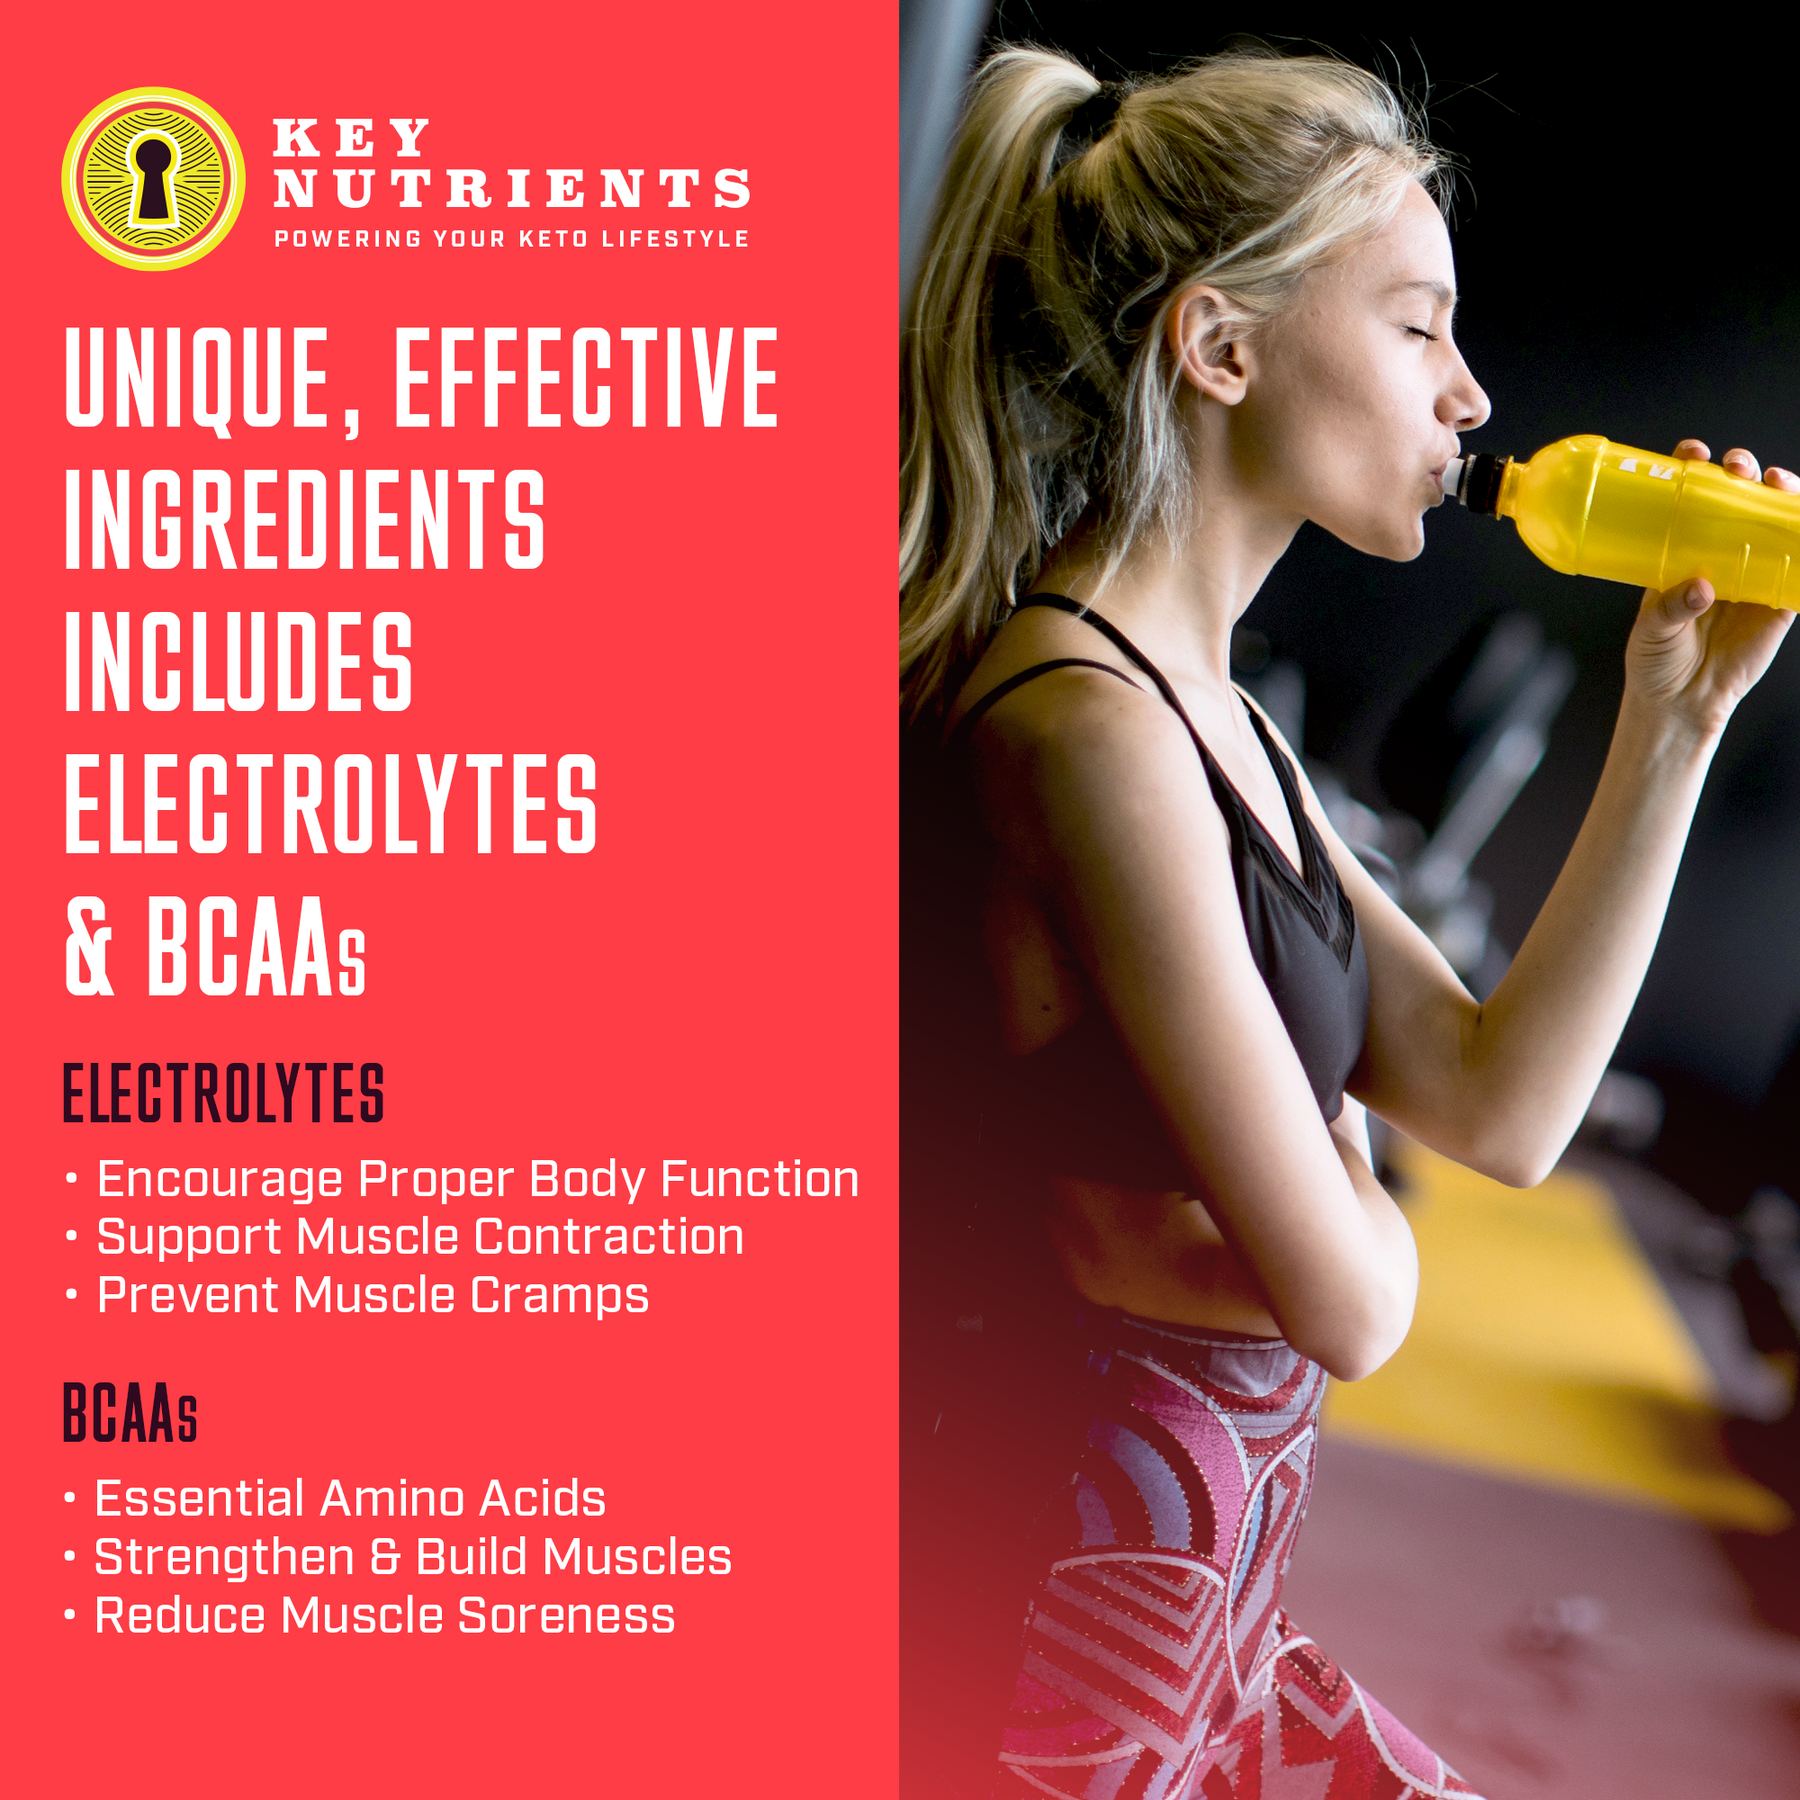 Pre-Workout Electrolytes benefits